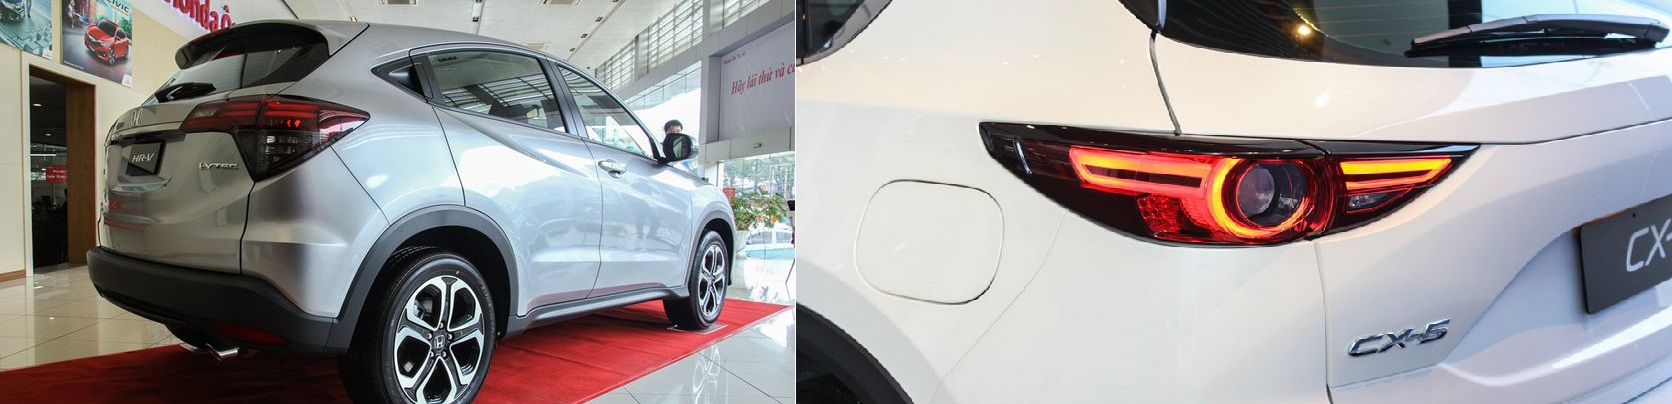 So sánh ngoại hình ô tô Honda HR-V 2019 và Mazda CX-5